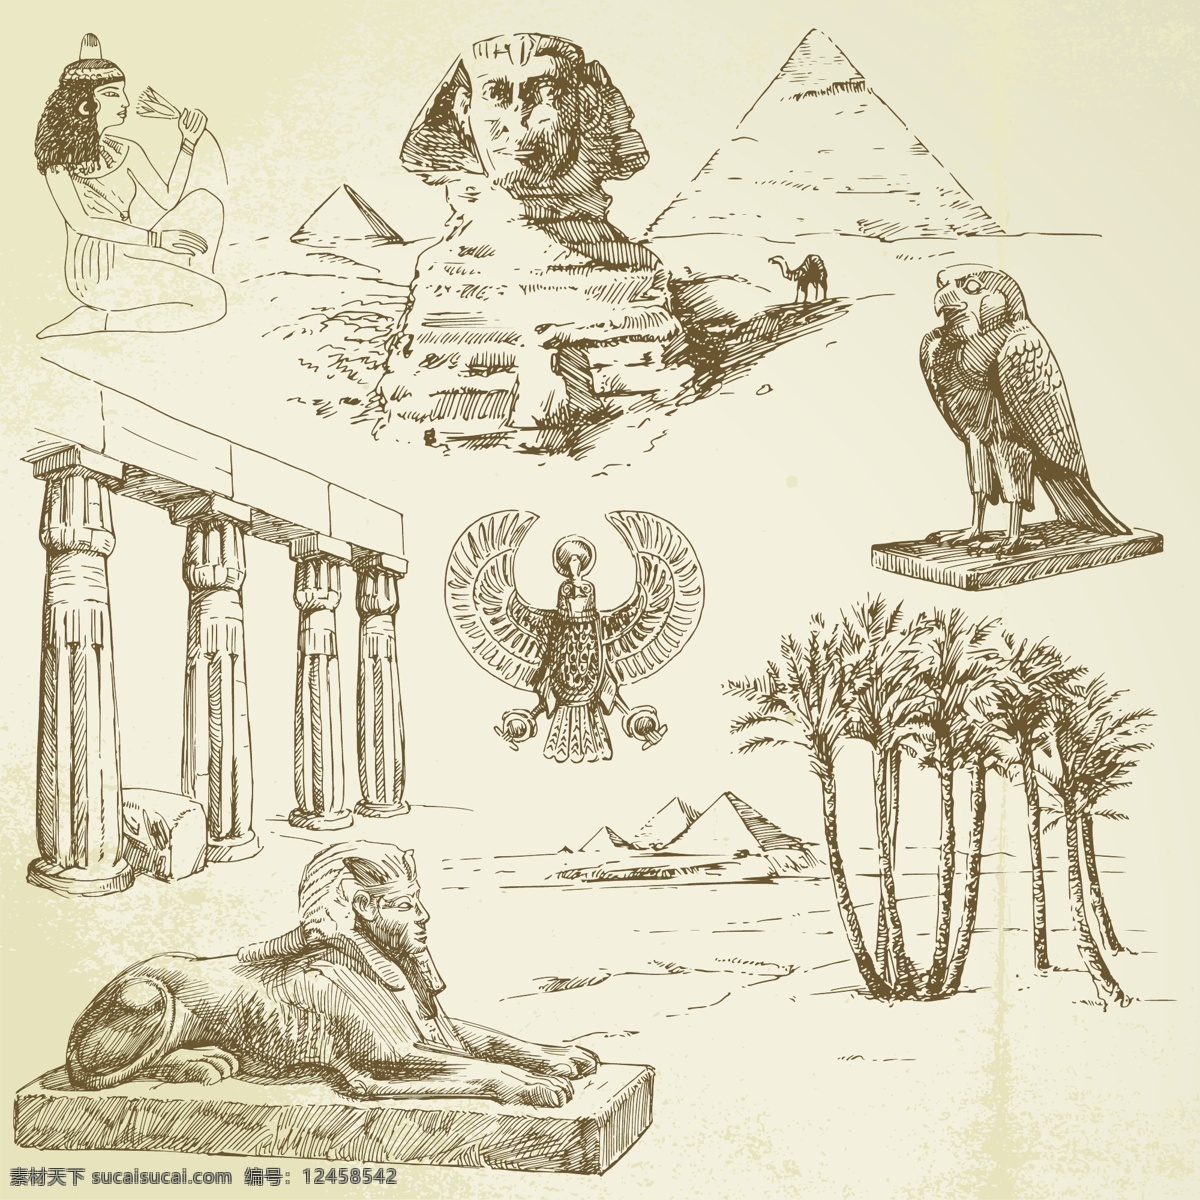 古埃 建筑 埃及 古典建筑 环境设计 建筑设计 金字塔 古埃及建筑 狮身人面像 装饰素材